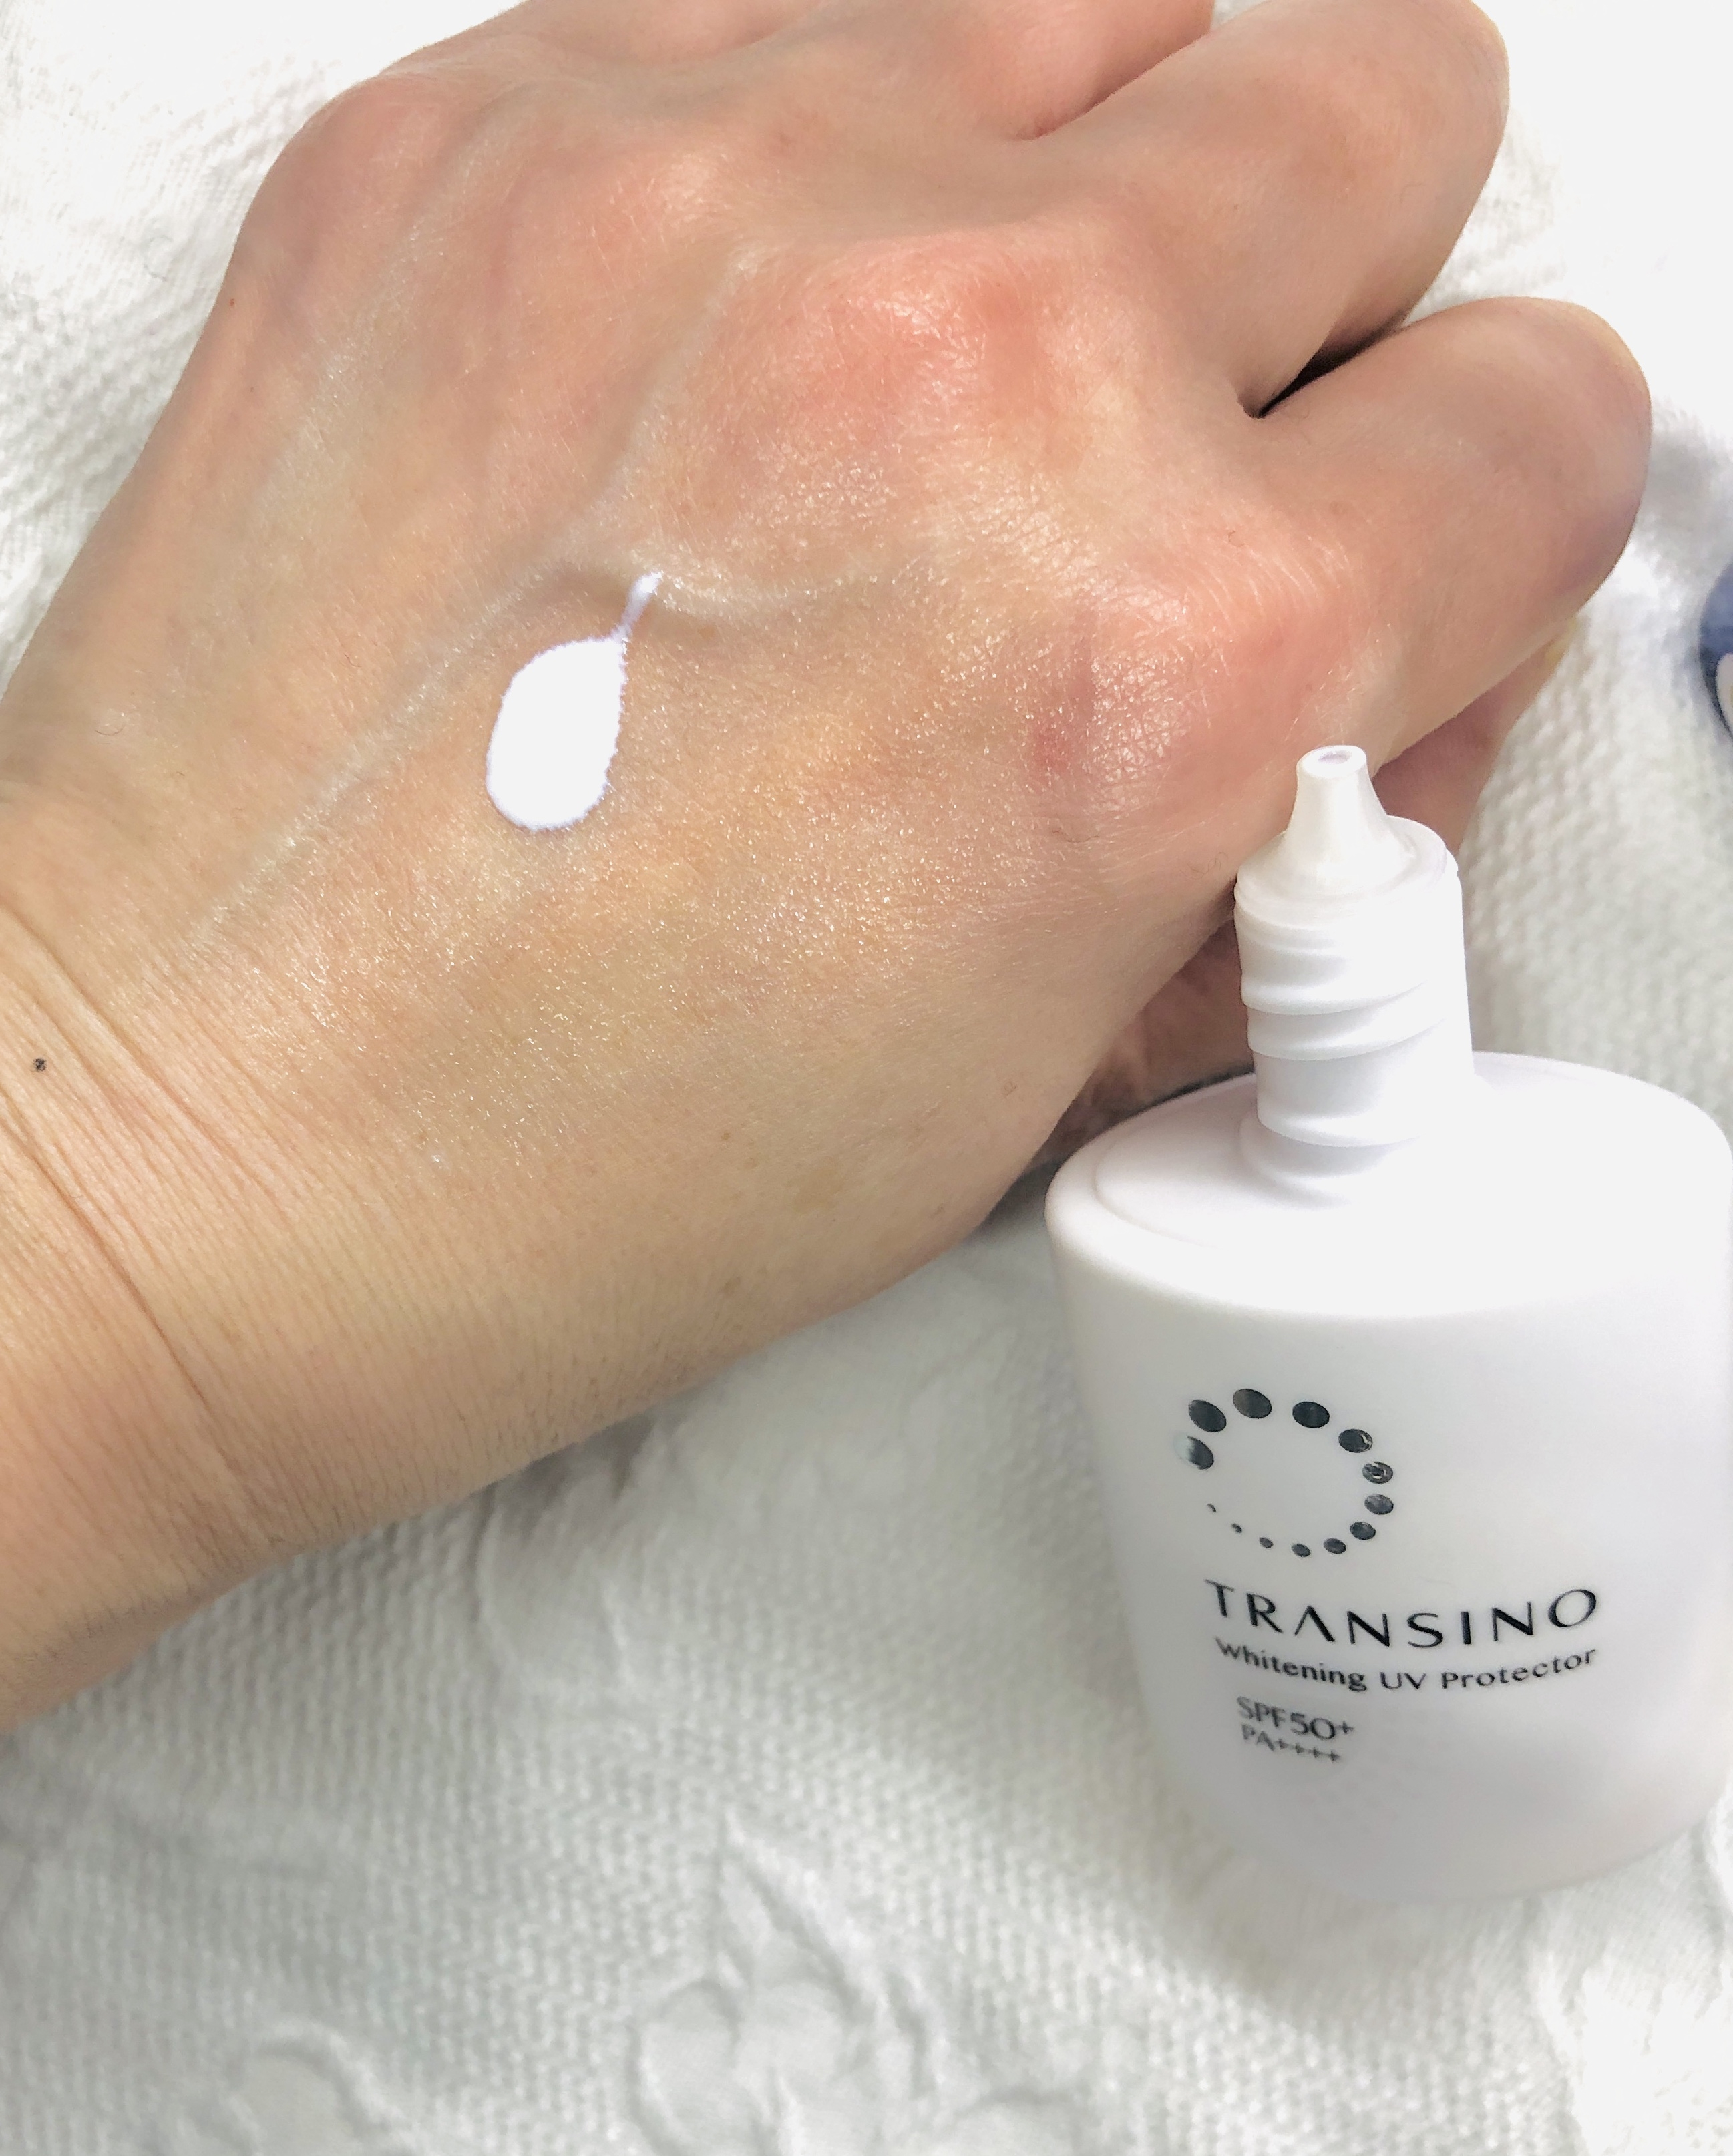 TRANSINO(トランシーノ) 薬用ホワイトニングUVプロテクターの良い点・メリットに関するトラネコさんの口コミ画像2